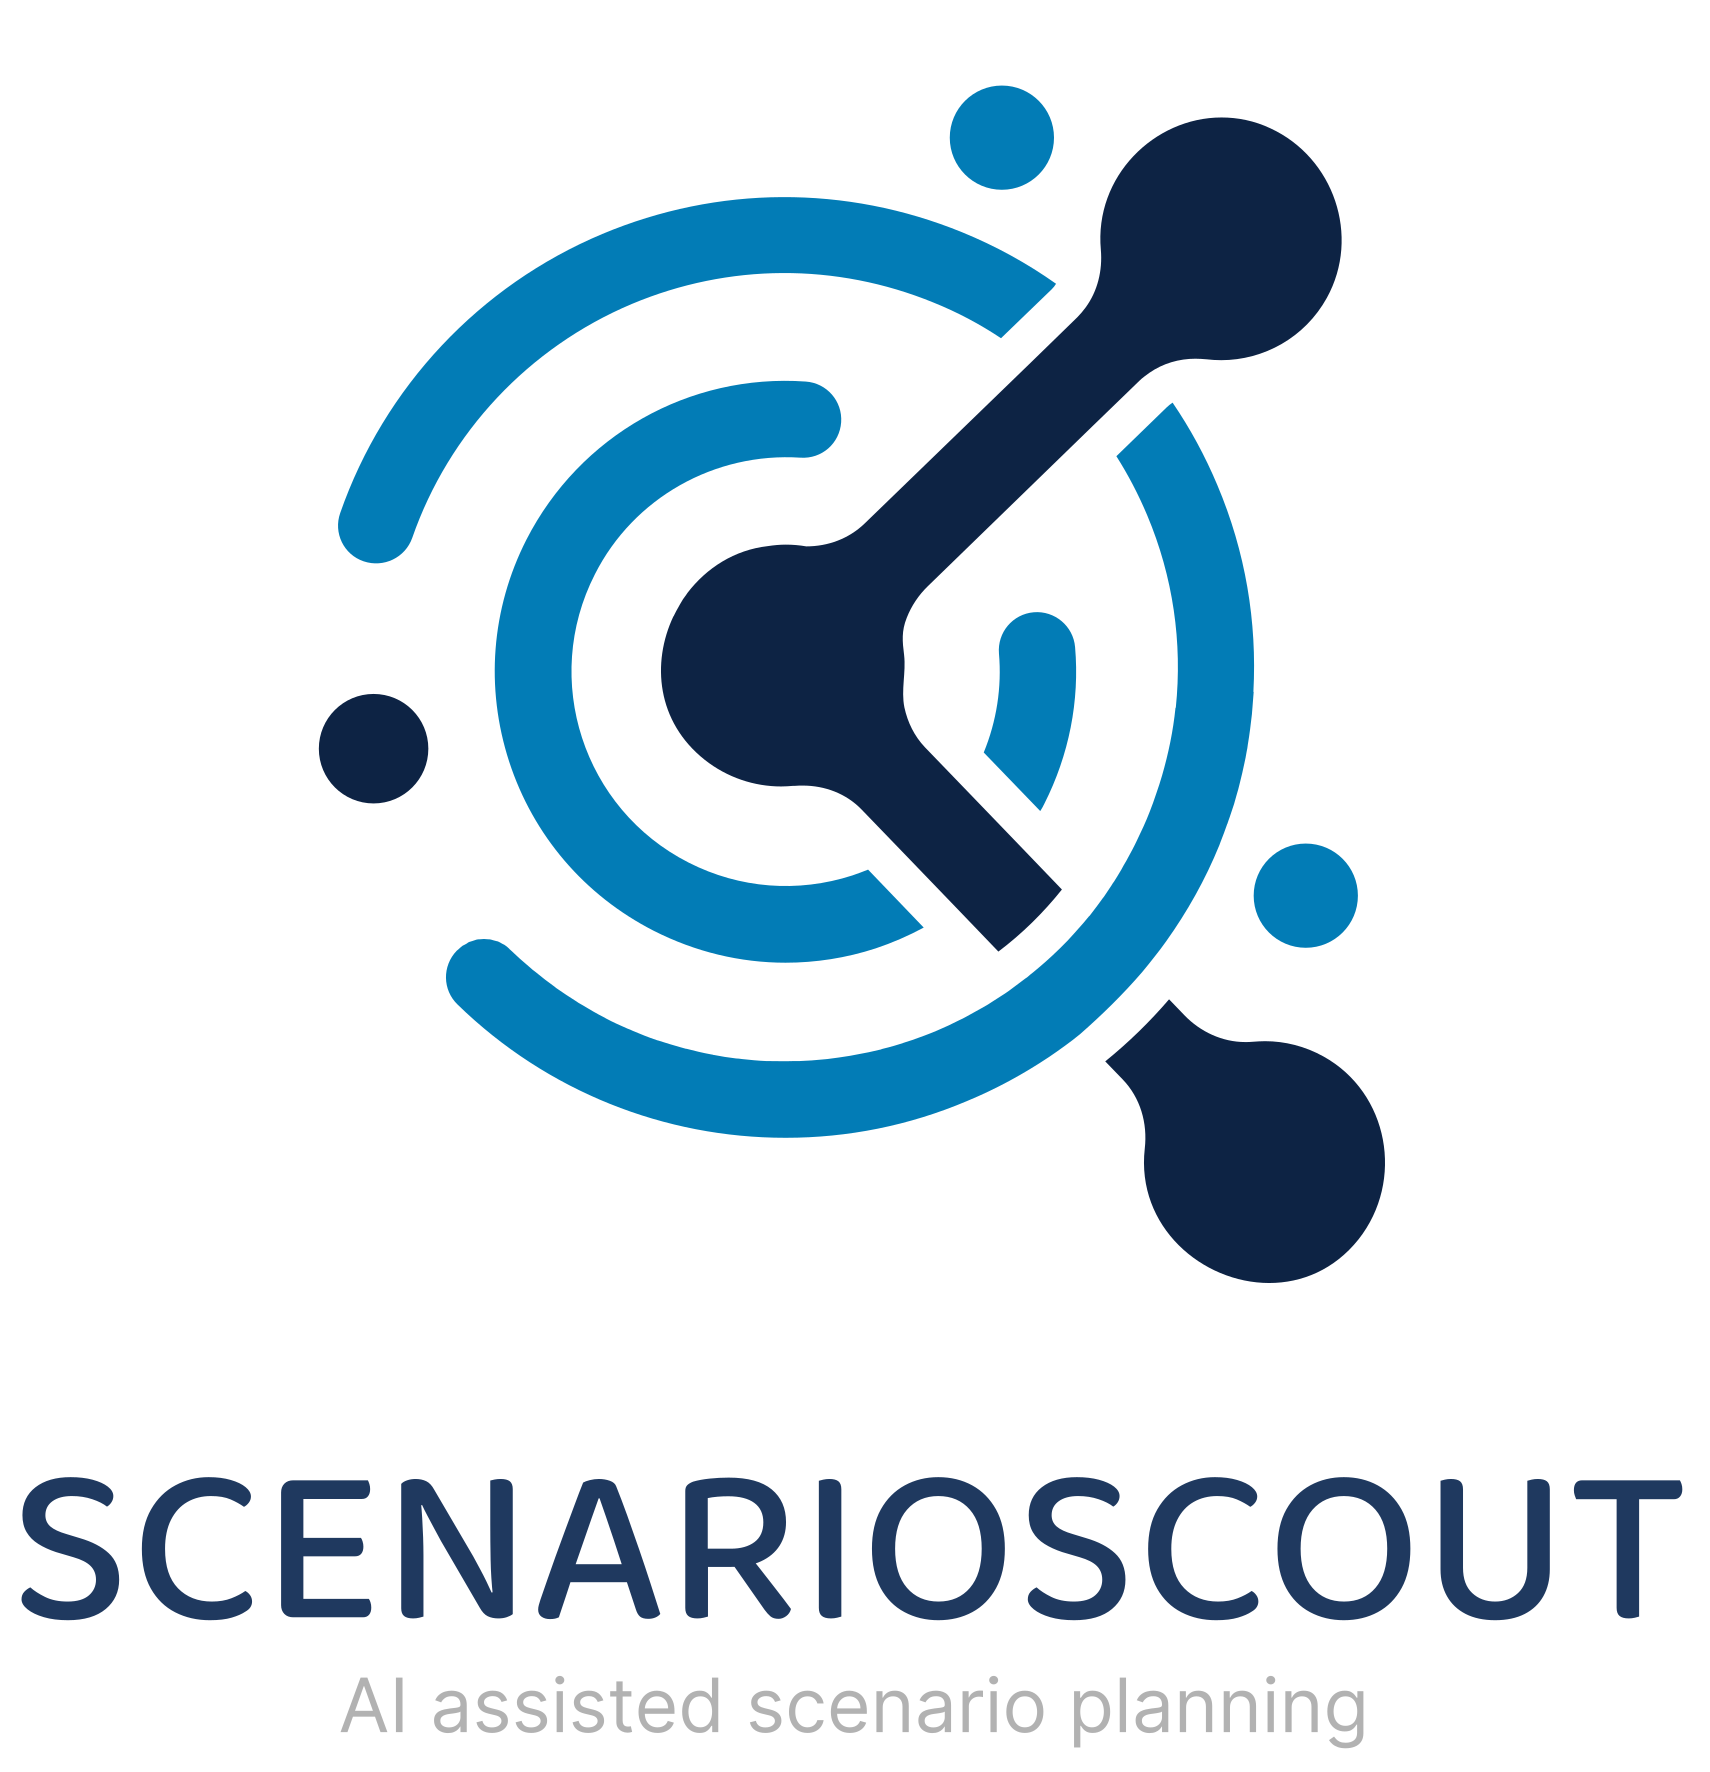 ScenarioScout AI scenario planning